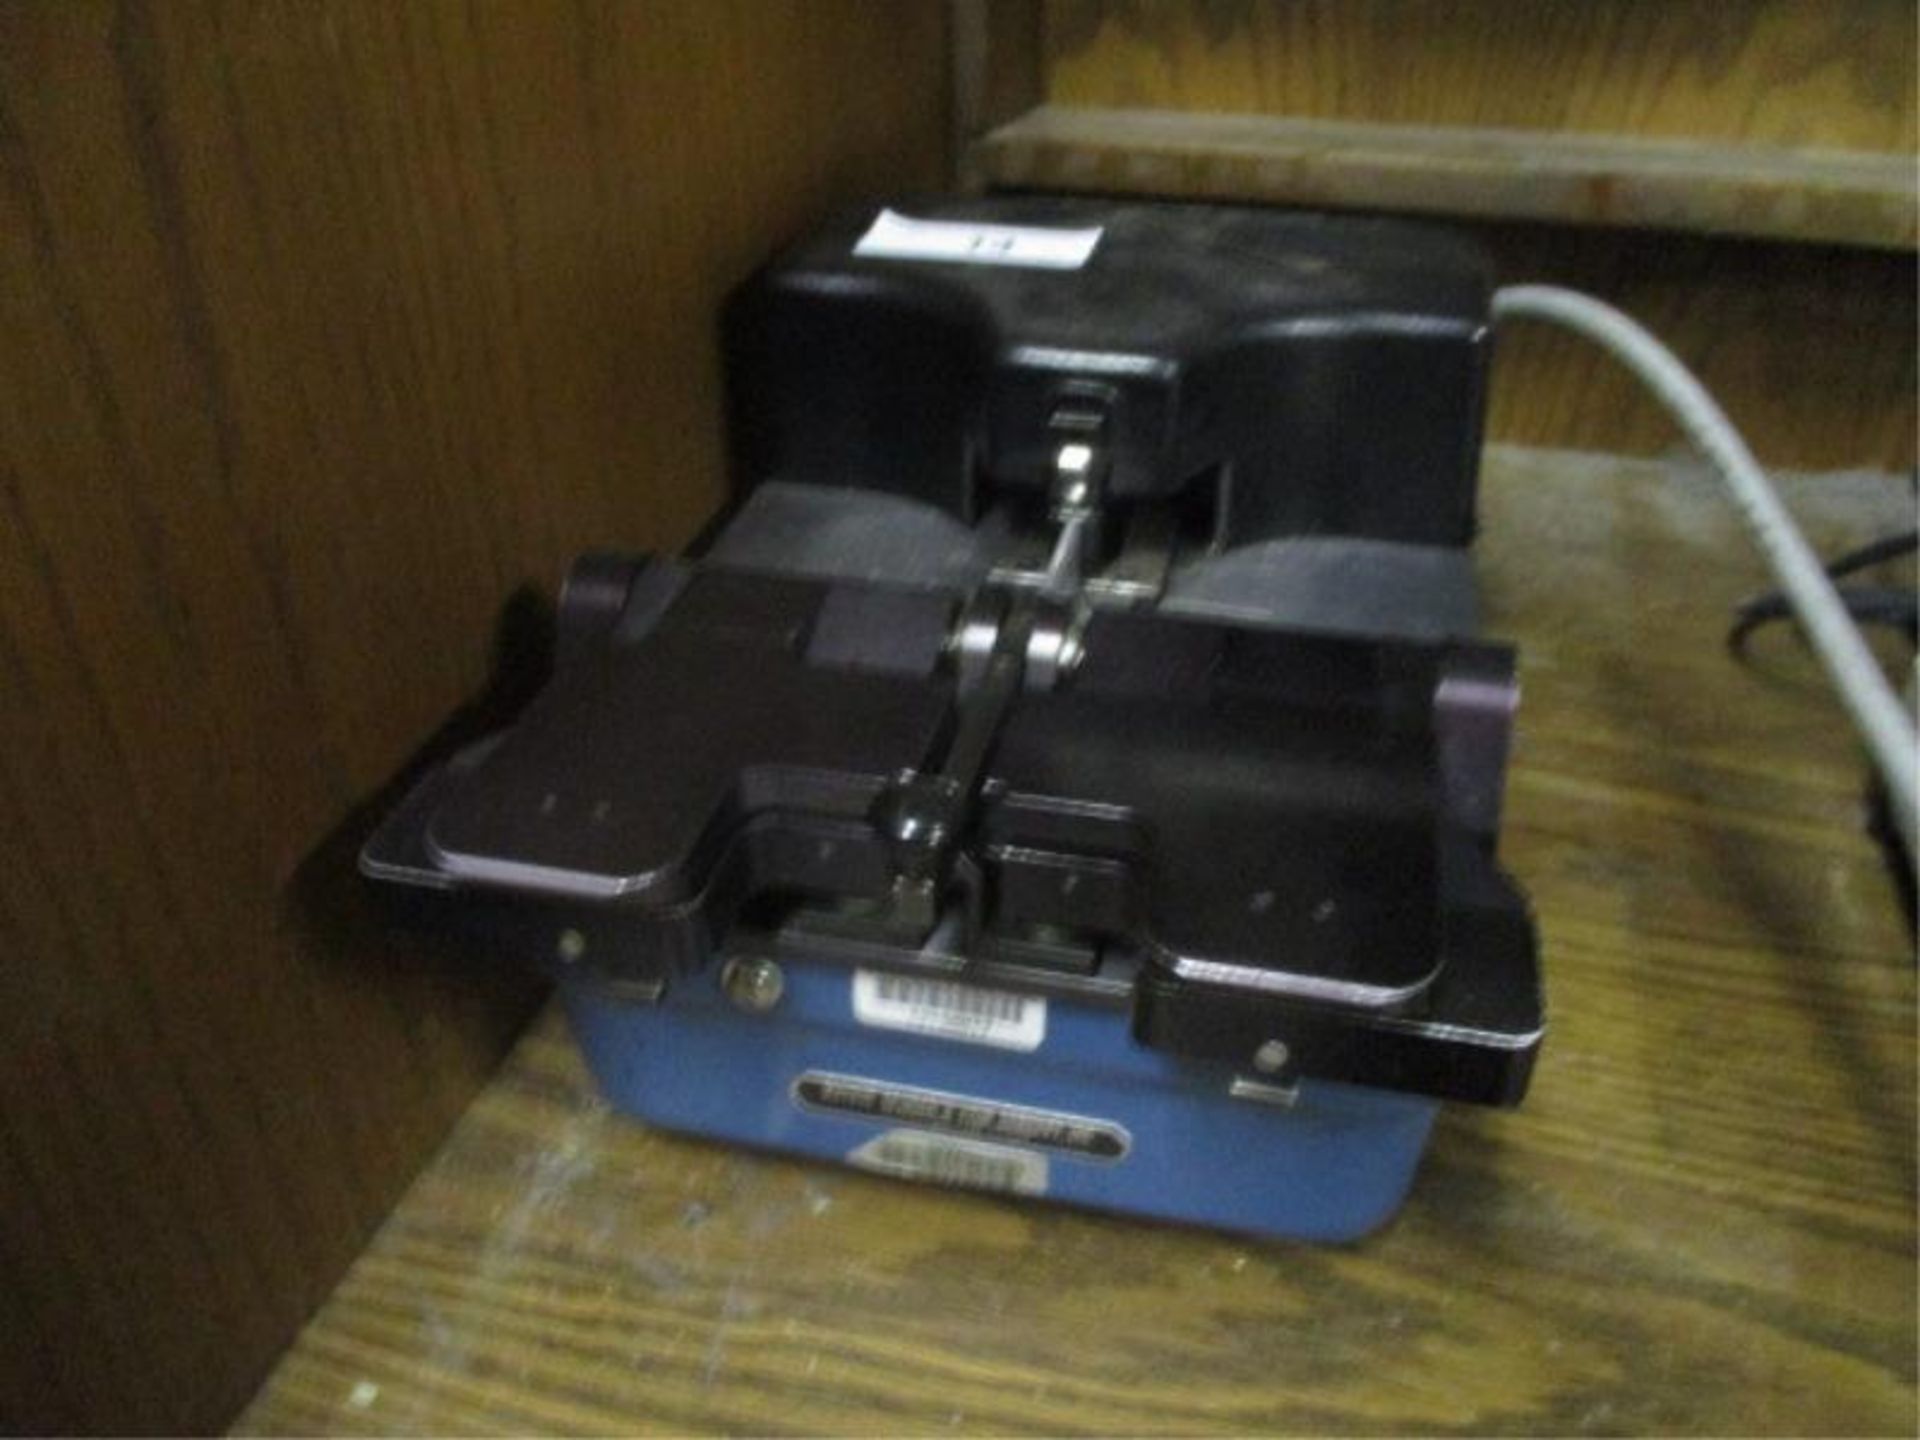 Ultrasonic Film Splicer, Model: 3001, SN: 1134